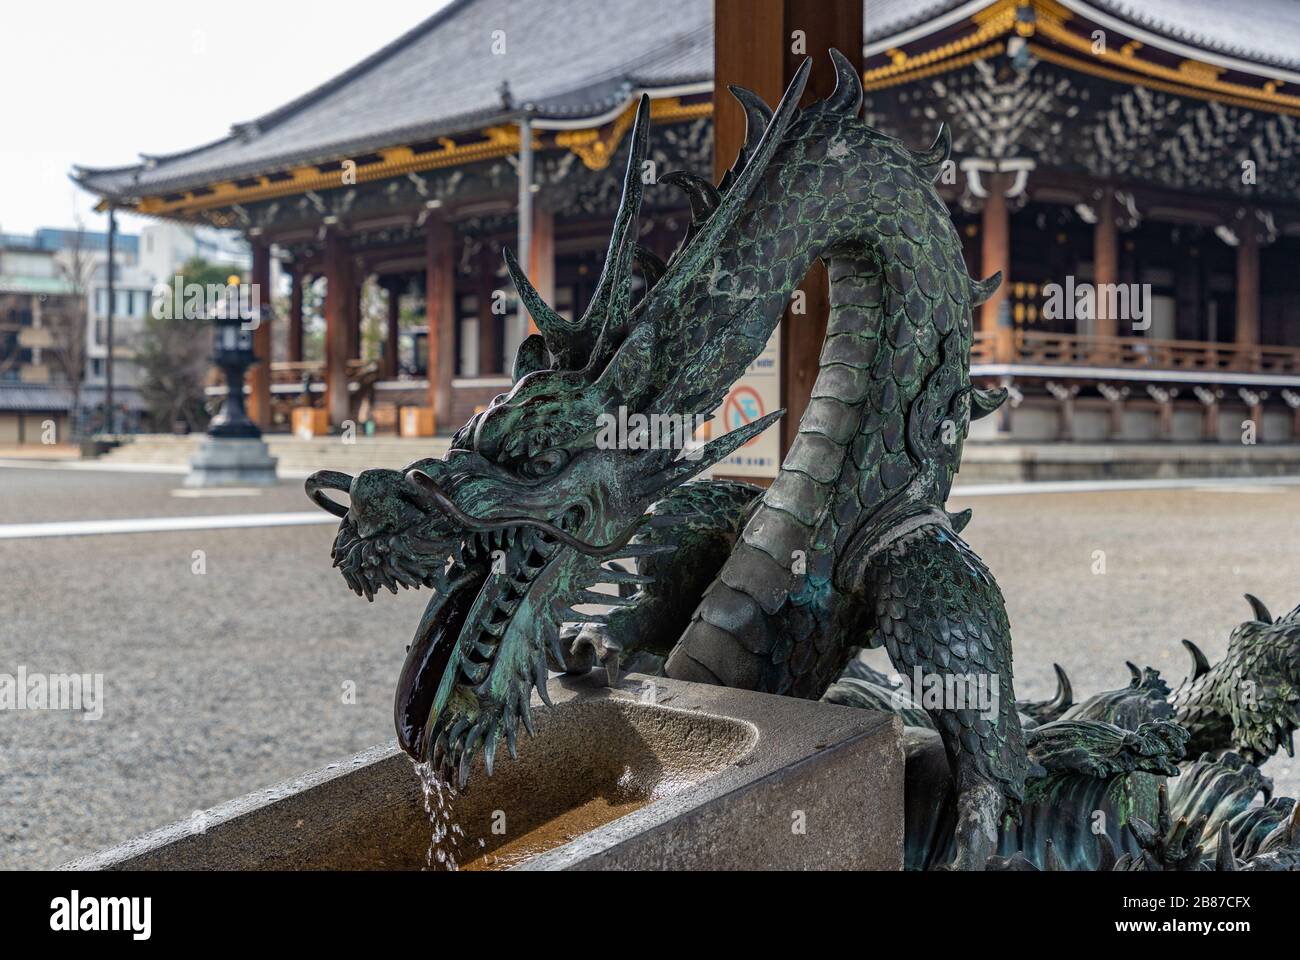 Ein Bild des Drachens, der das chōzuya (zeremonielle Wasser) des Higashi-Hongan-JI-Tempels schmückt. Stockfoto